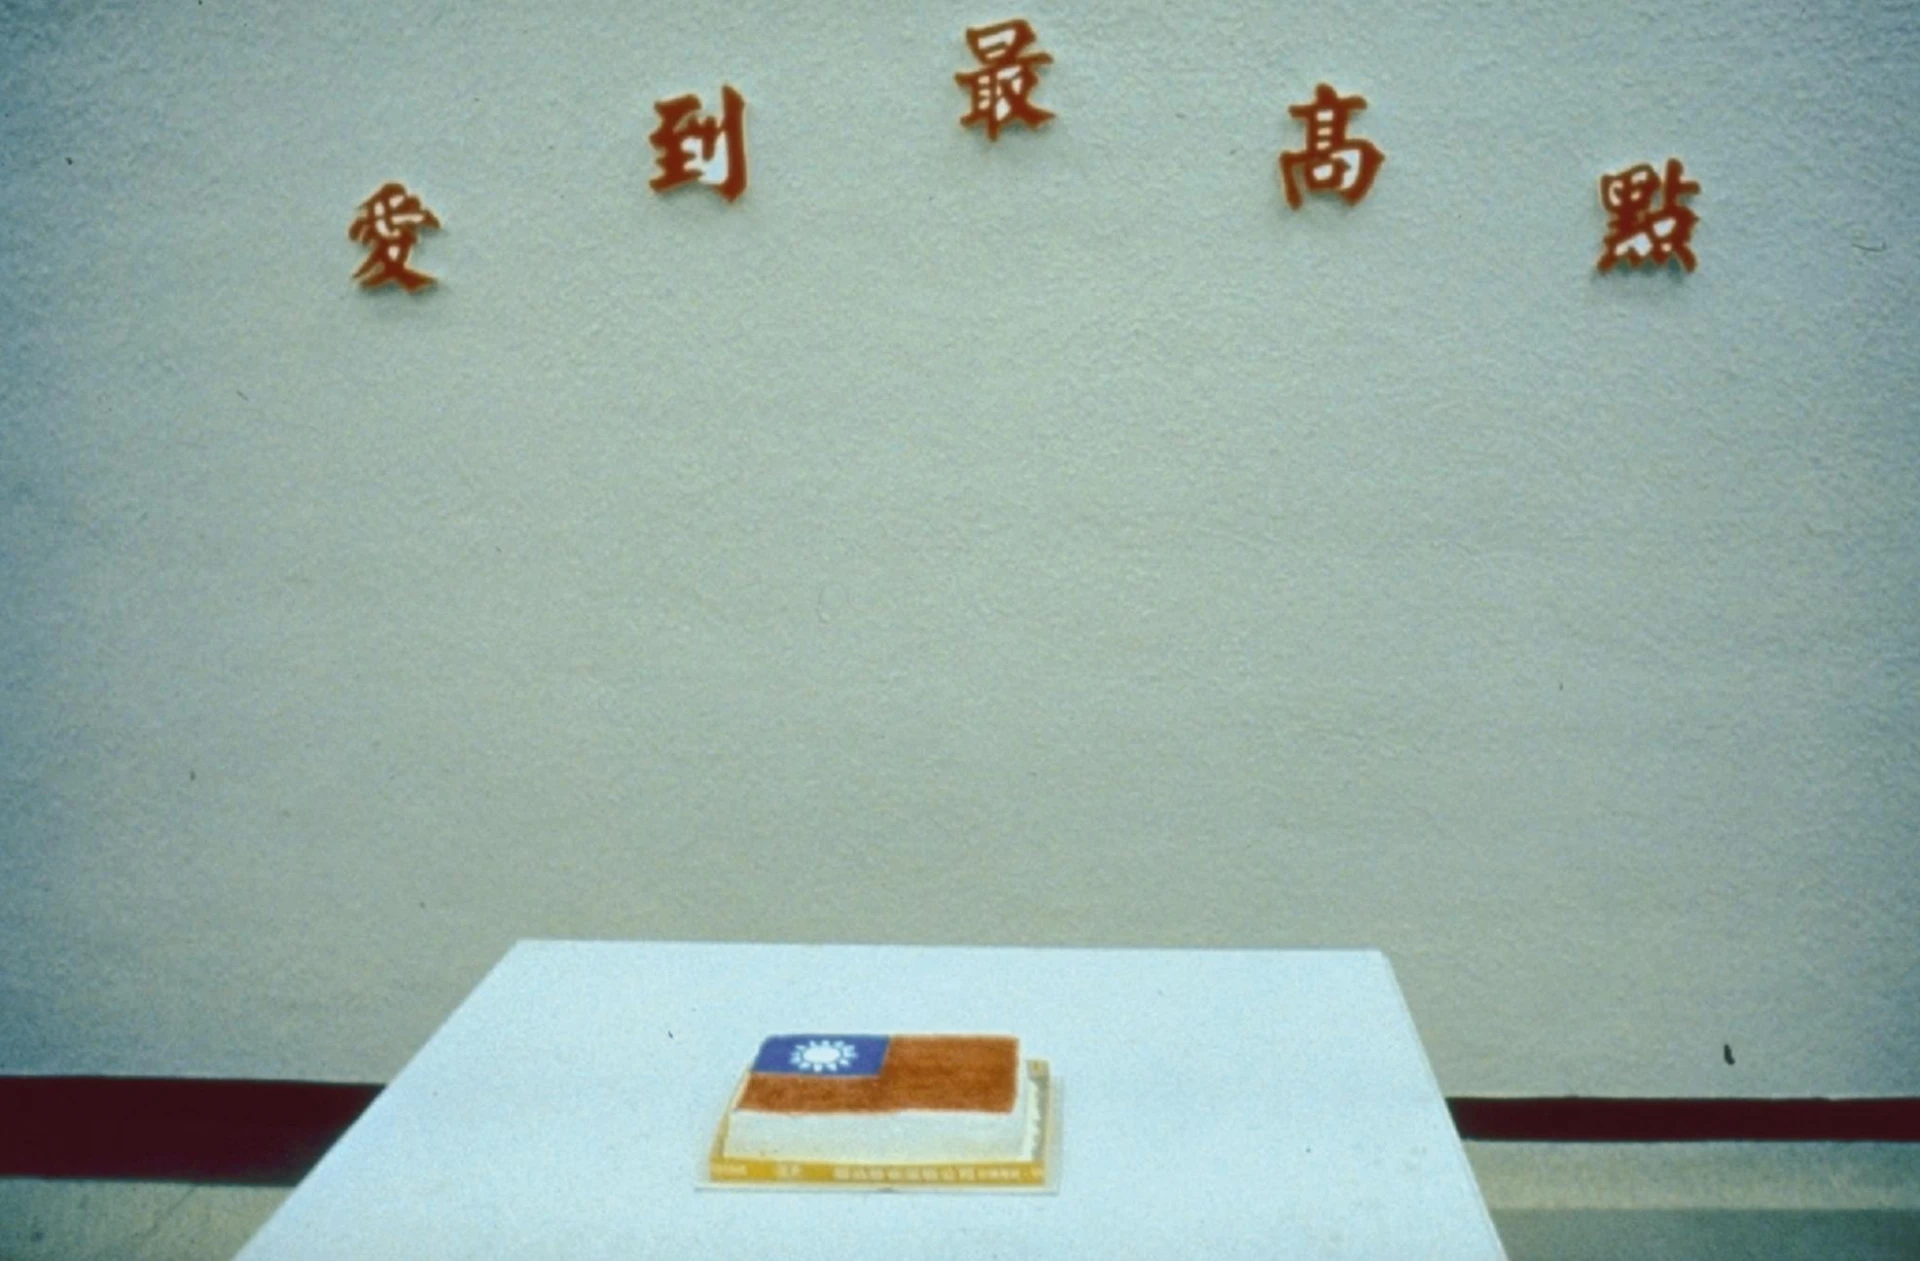 吳瑪悧，《愛到最高點》，1990，複合媒材；作品參加「1990中華民國現代美術新展望」，於北美館佈展一景-圖片